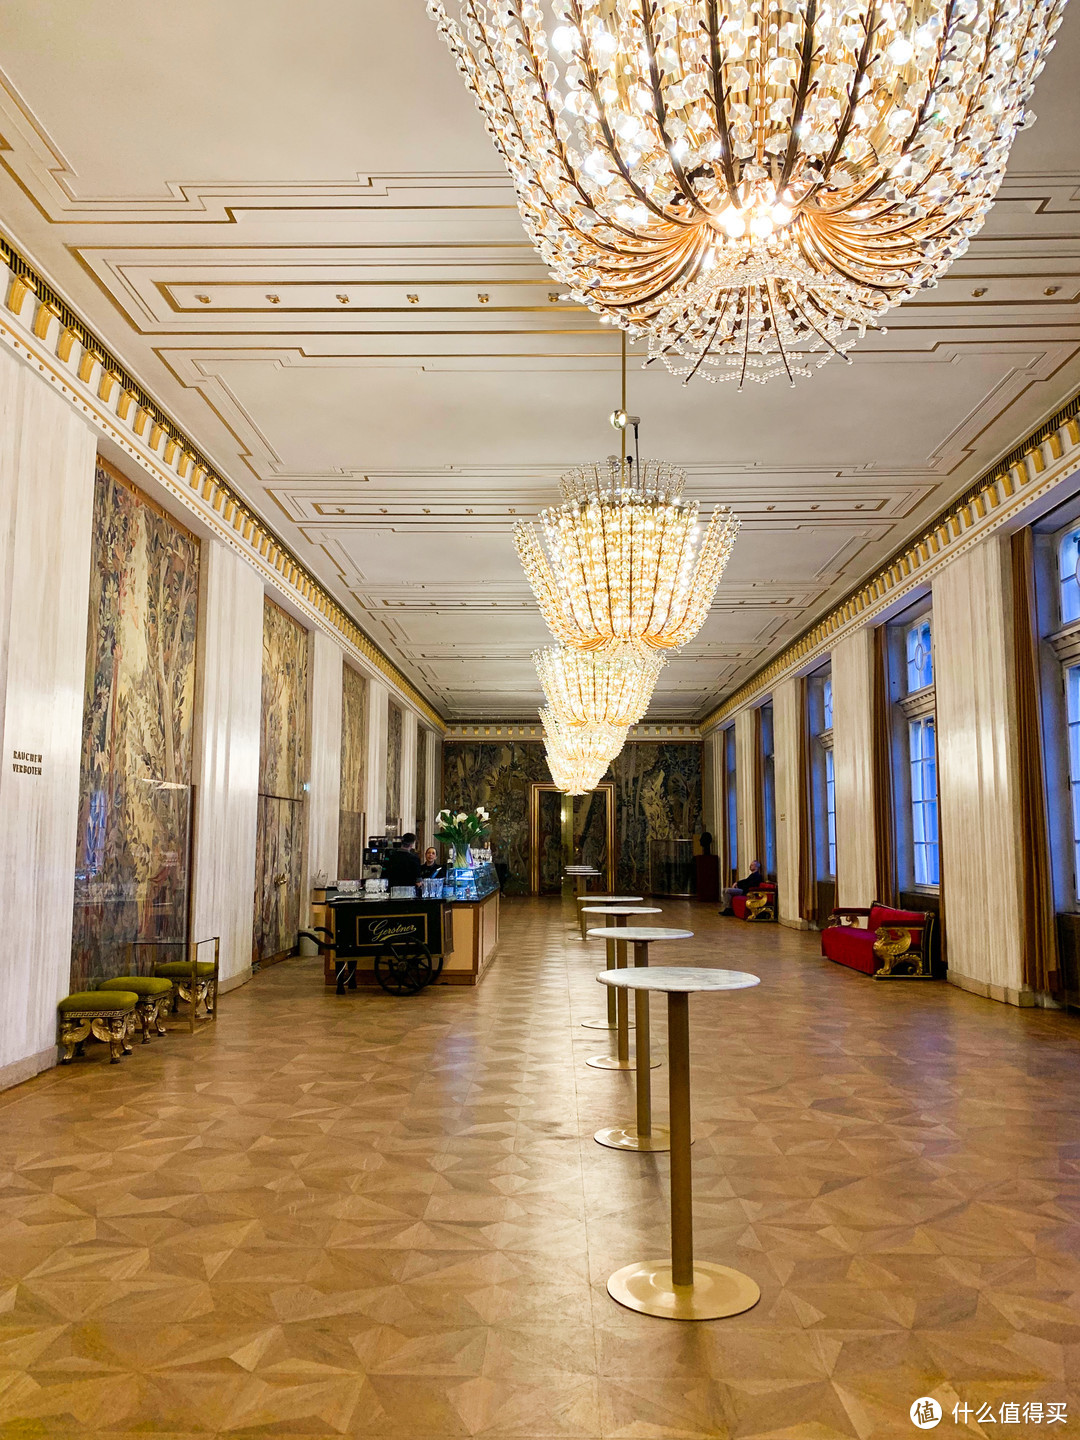 维也纳艺术之旅——不到一张电影票的价格就能打卡维也纳金色大厅